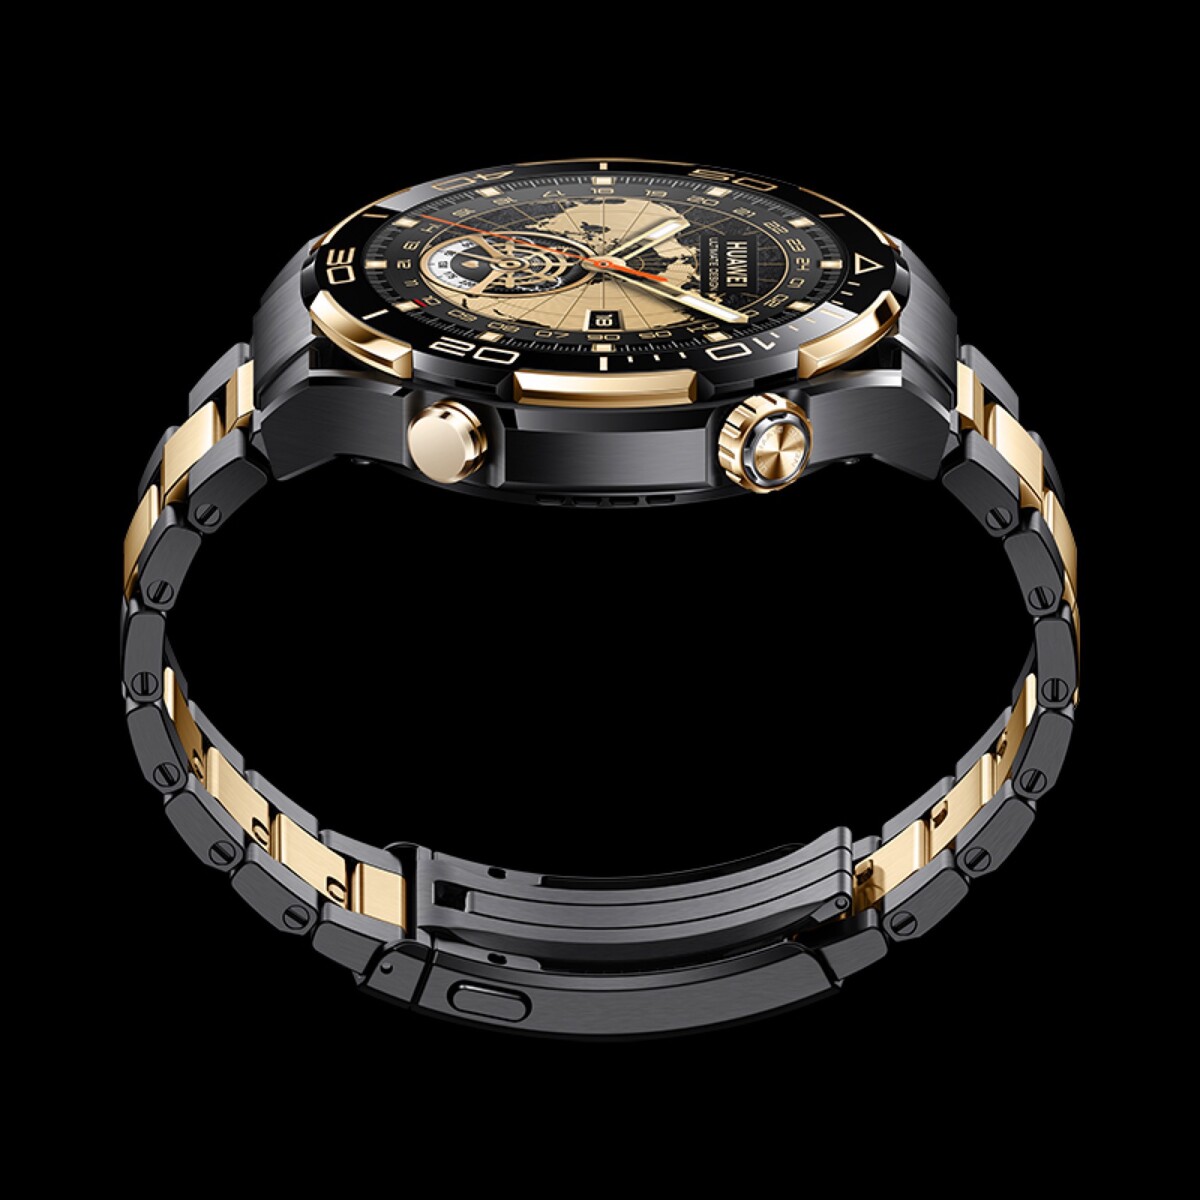 Huawei Watch Ultimate Design ora disponibile in Europa e nel Regno Unito  con design in oro 18 carati -  News